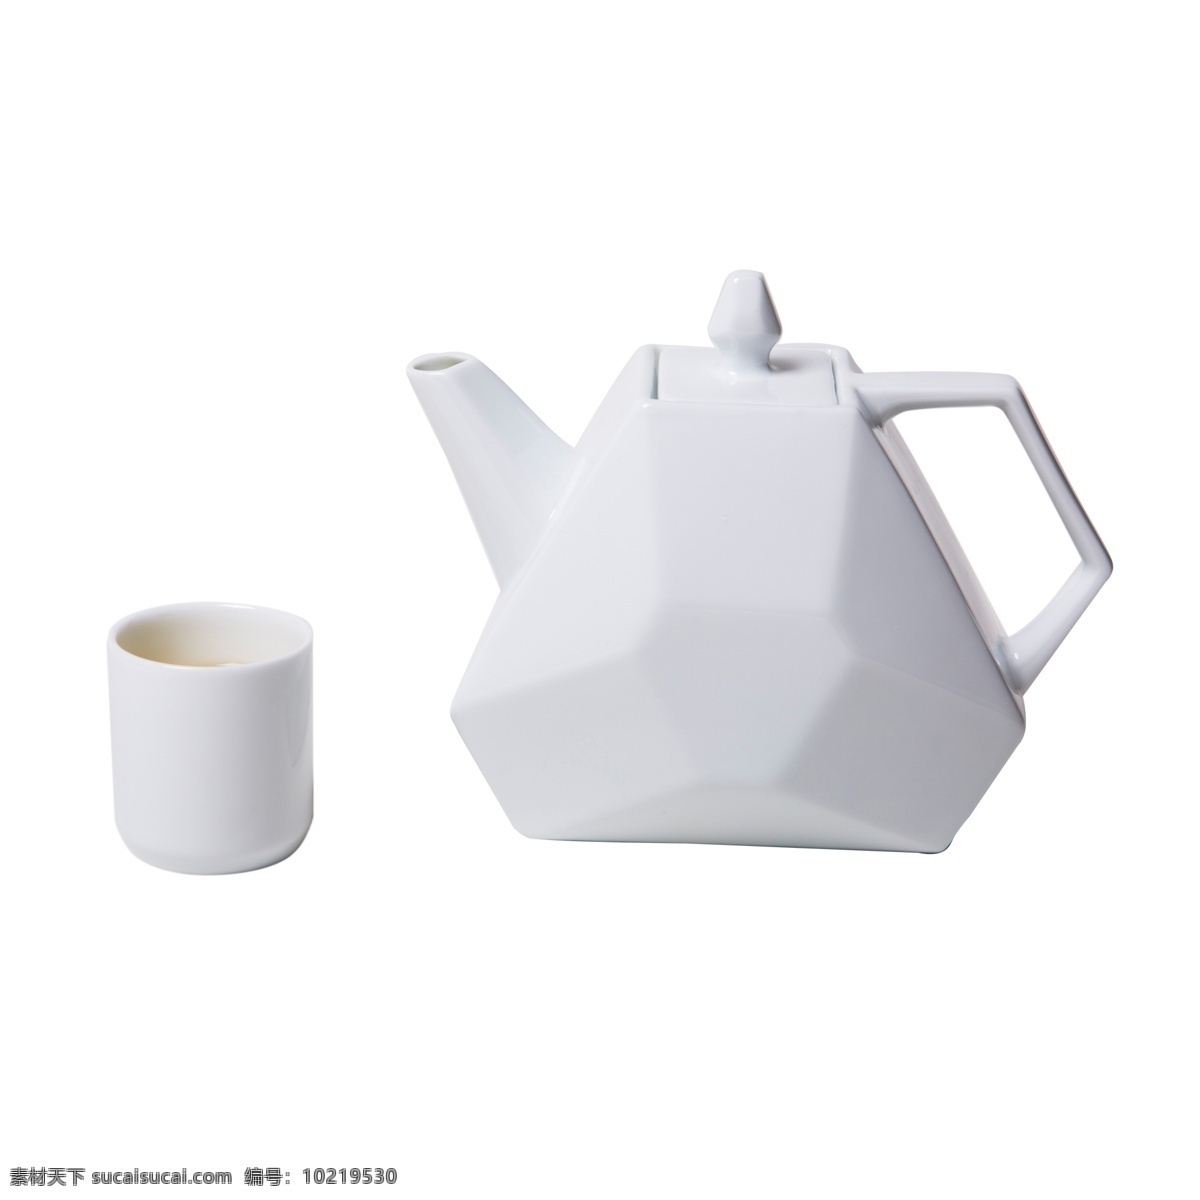 白色 创意 茶具 元素 几何 三角形 光泽 纹理 餐具 盖子 杯子 插画 质感 把手